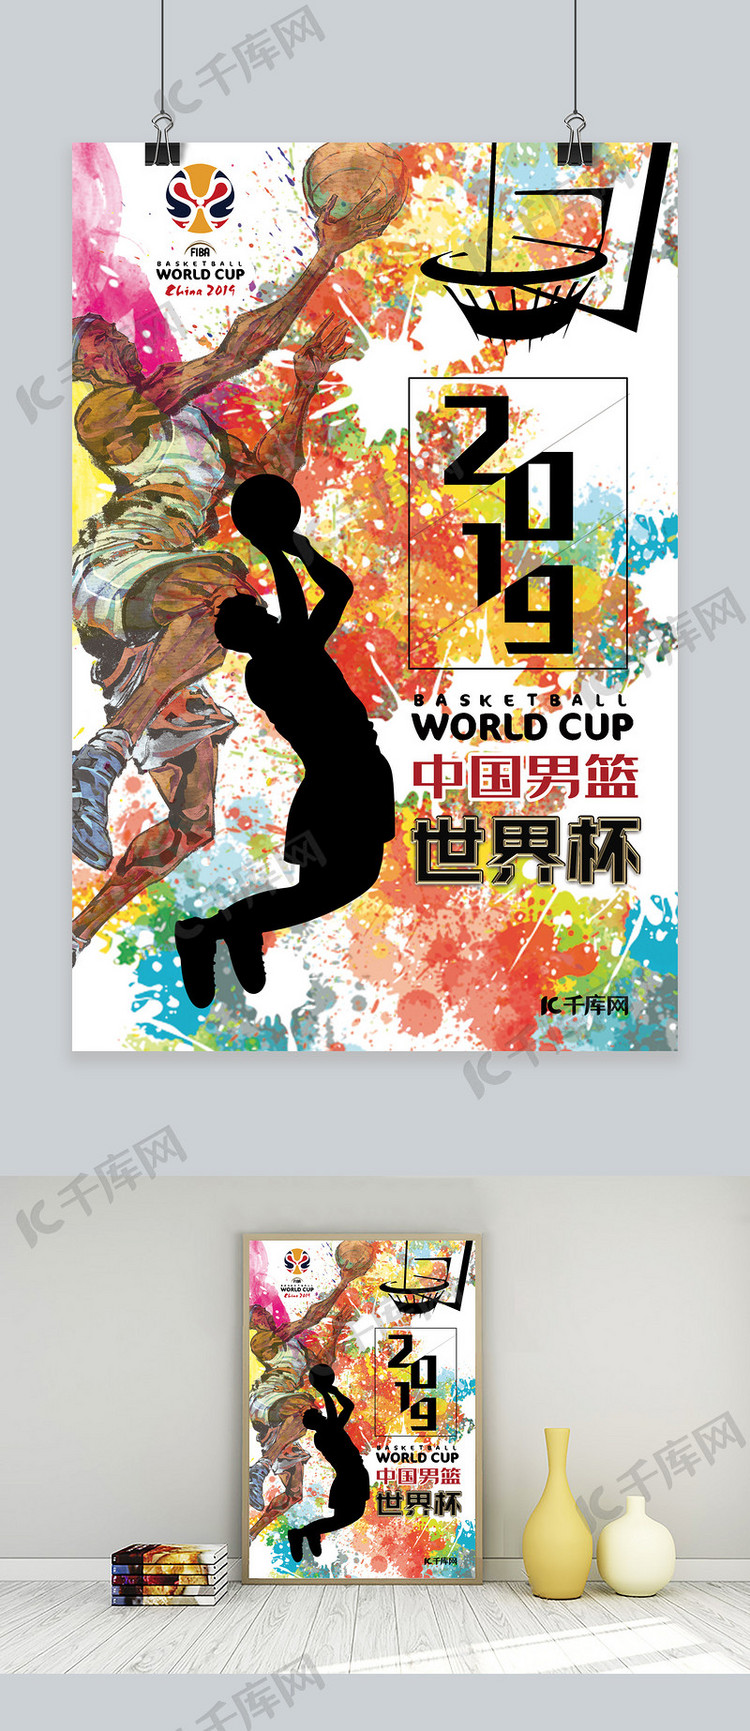 2019中国男篮世界杯宣传海报